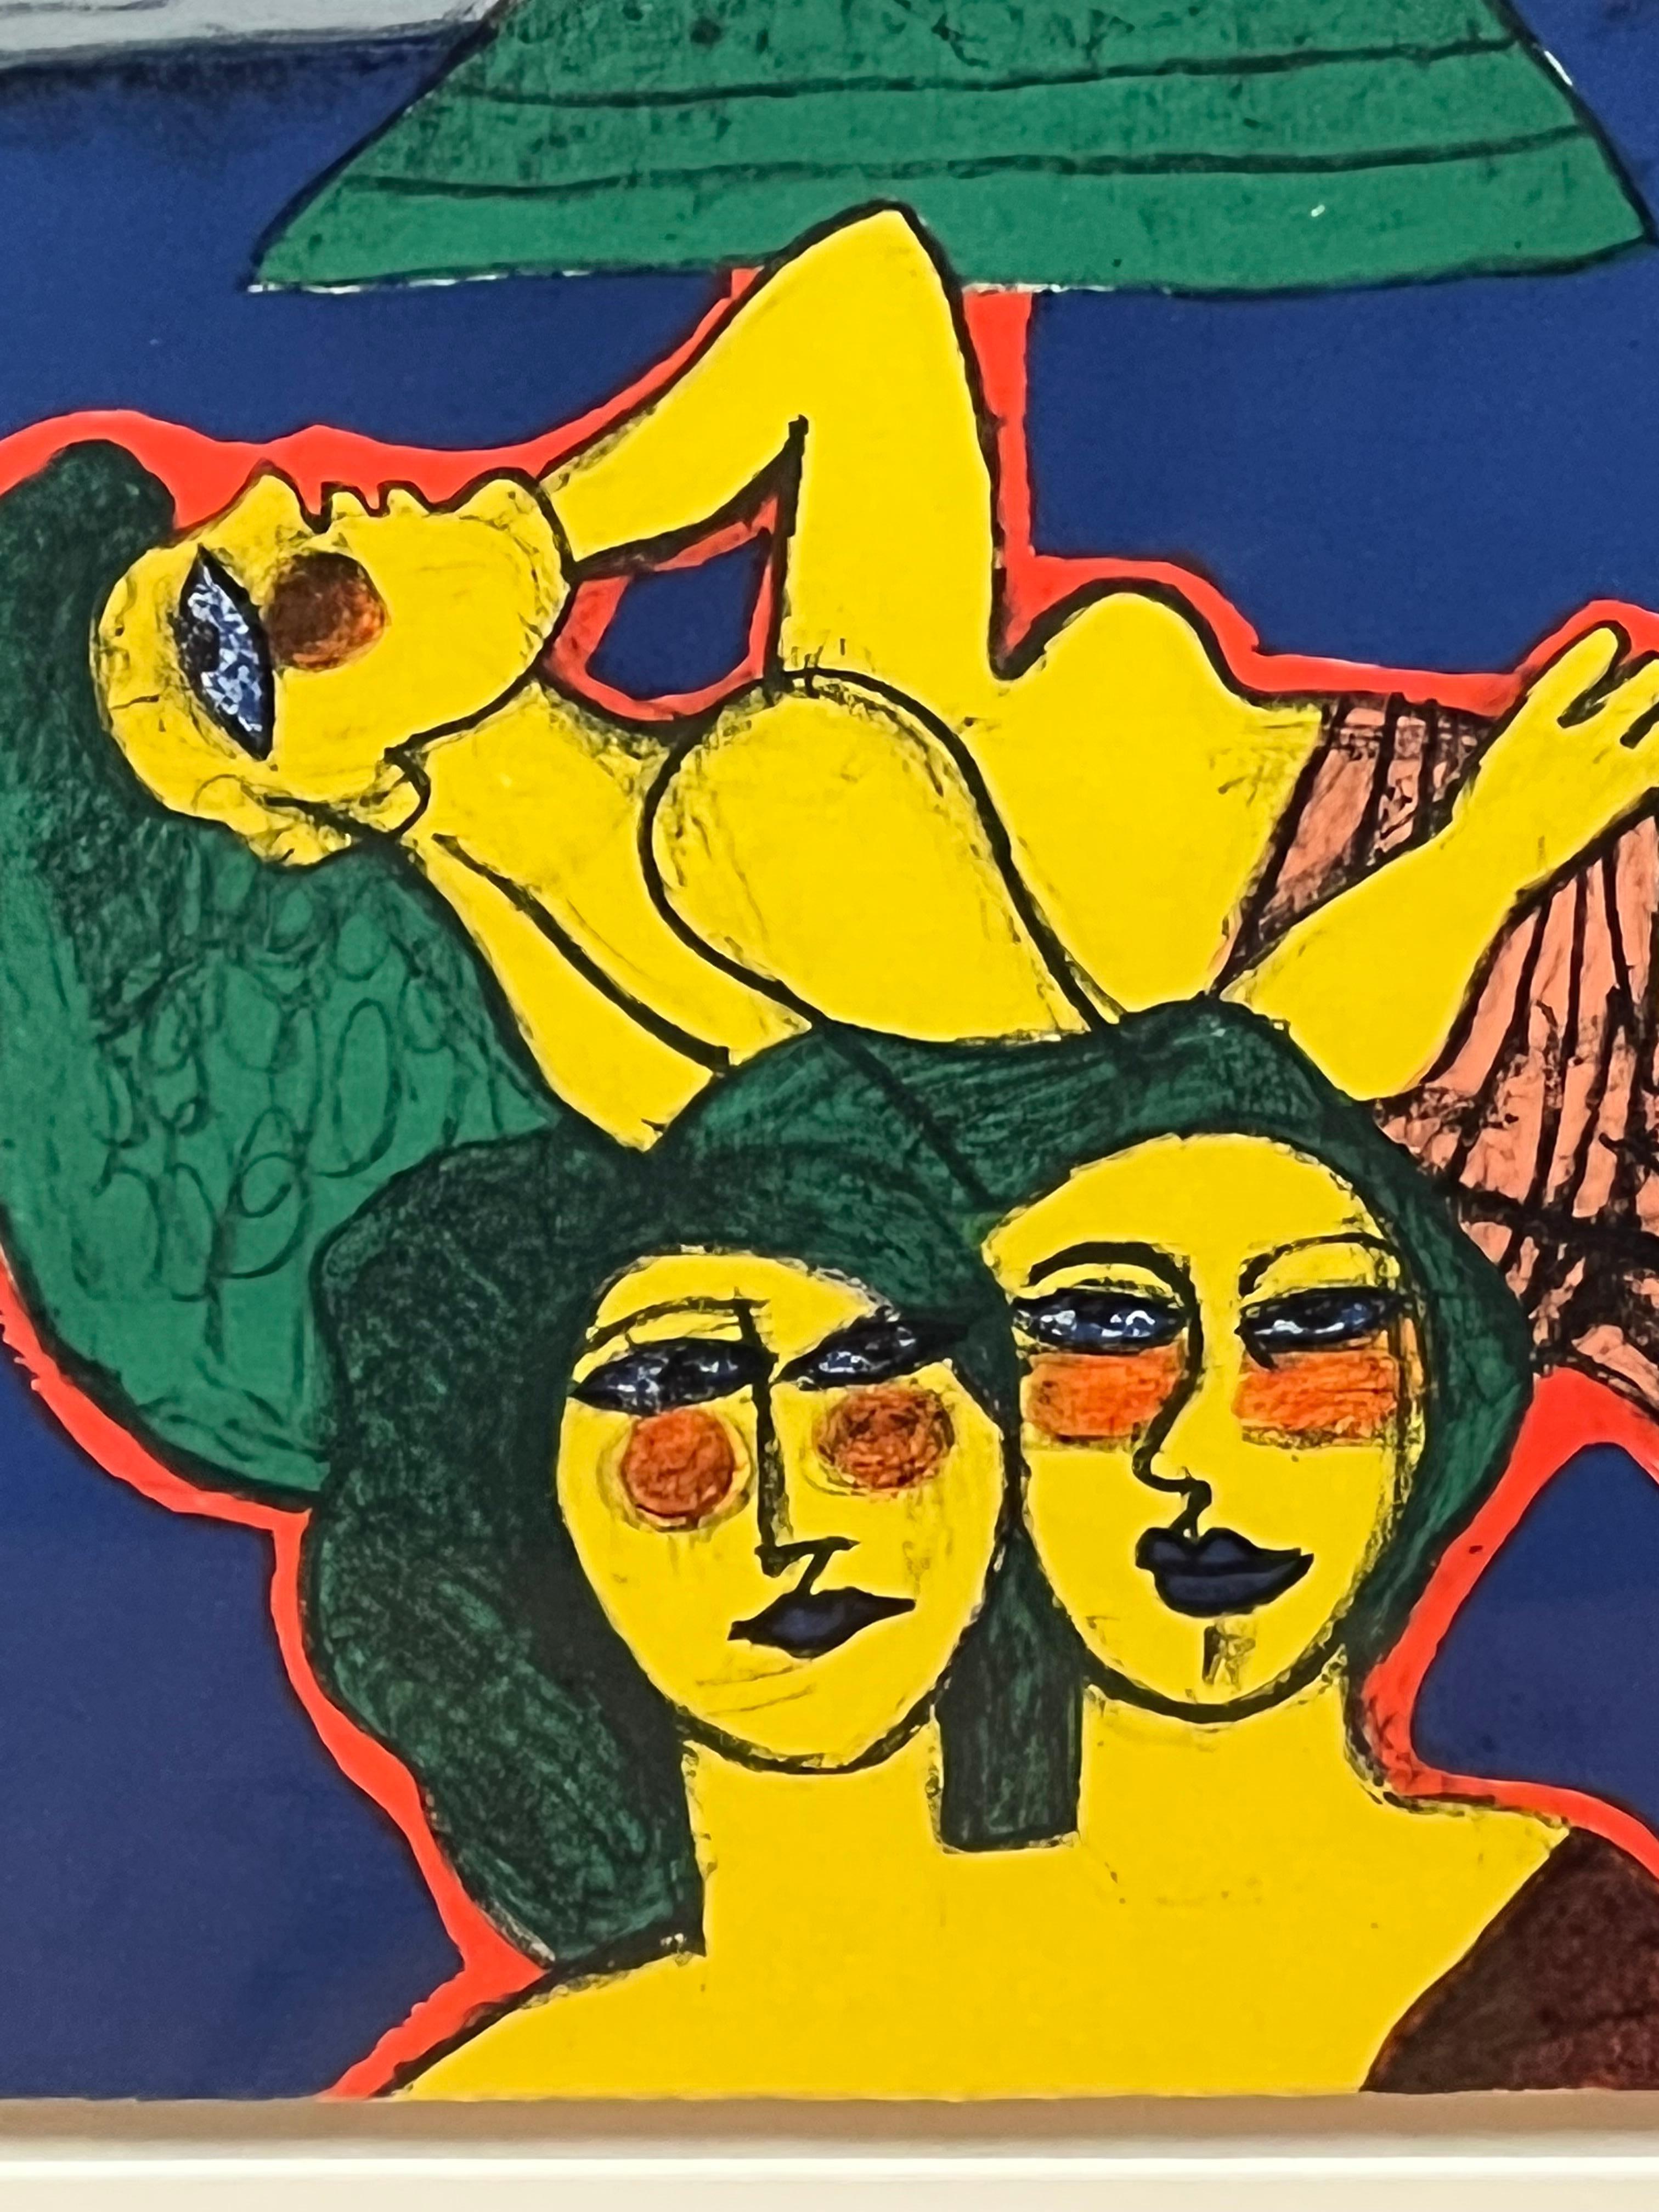 Diese Lithografie sowie die drei folgenden stammen von dem niederländischen Künstler Corneille (1922-2016), der lyrische, expressionistische, farbenfrohe Gemälde schuf und einer der Begründer der europäischen Nachkriegsbewegung Cobra war. Er war